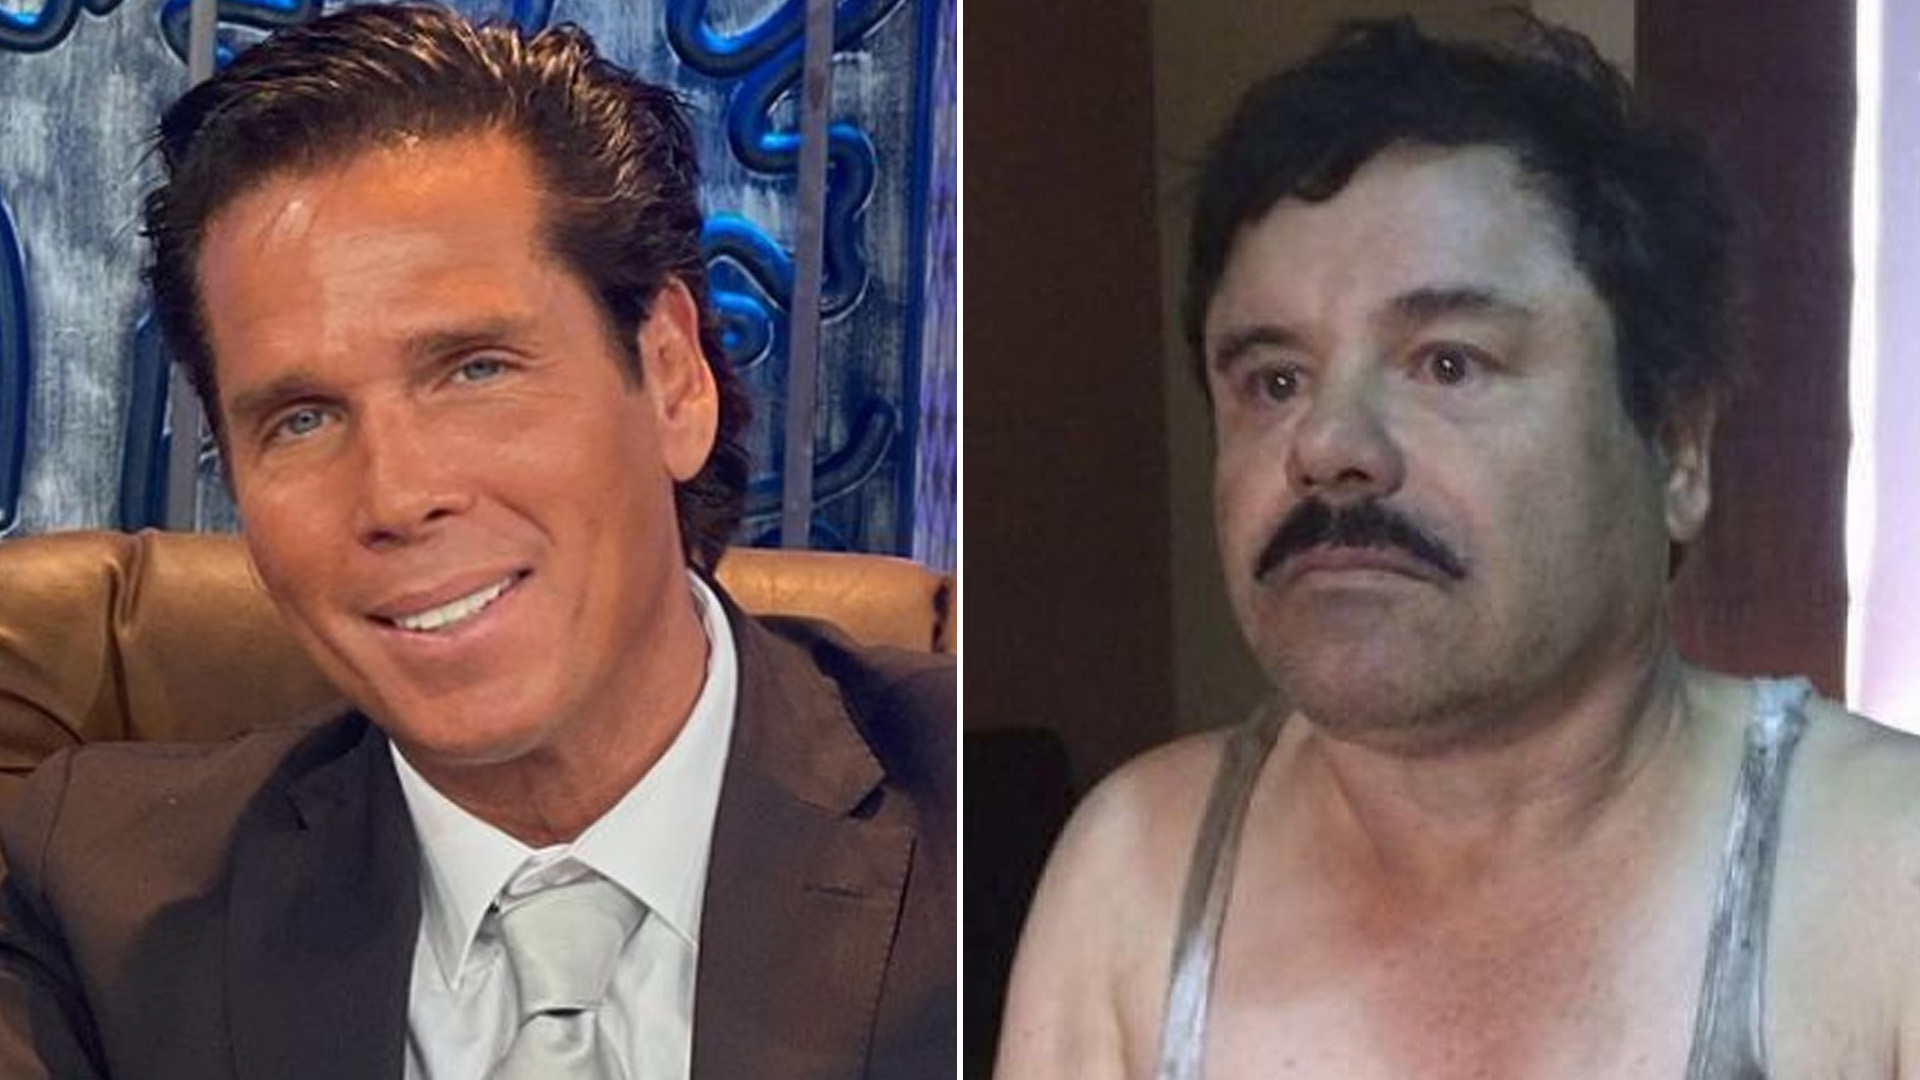 El actor confirmó su postura ante sus declaraciones sobre "El Chapo" Guzmán y volvió a hablar de lo increíble que fue para él su última fuga (Fotos: Instagram/@robertopalazuelosbadeaux // Cuartoscuro)